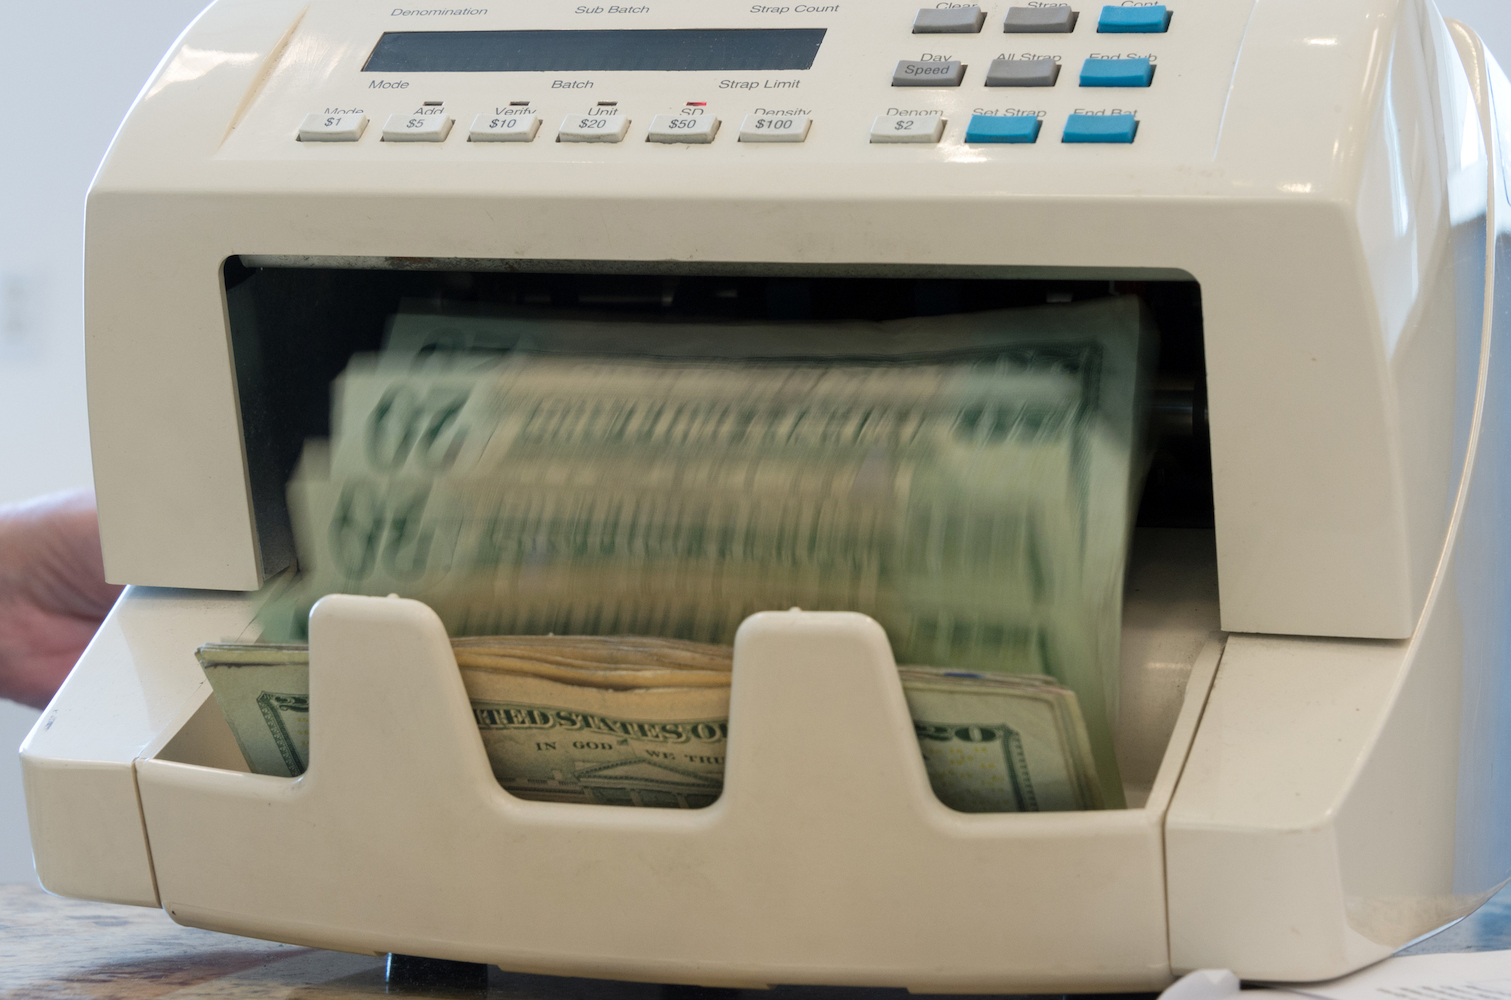 Machine that counts twenty dollar bills